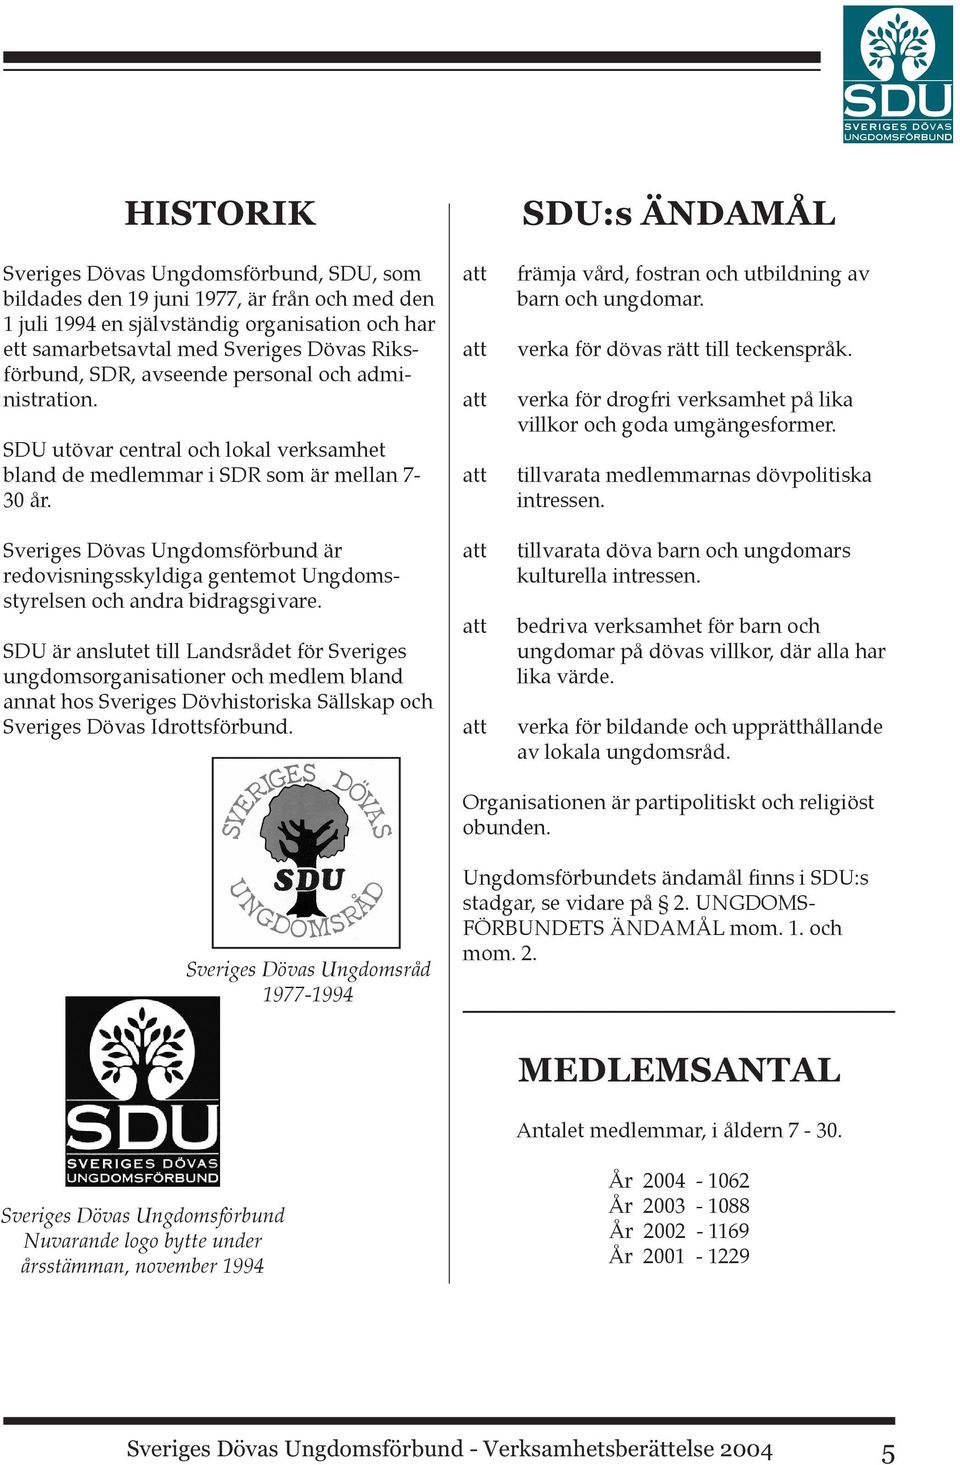 Sveriges Dövas Ungdomsförbund är redovisningsskyldiga gentemot Ungdomsstyrelsen och andra bidragsgivare.